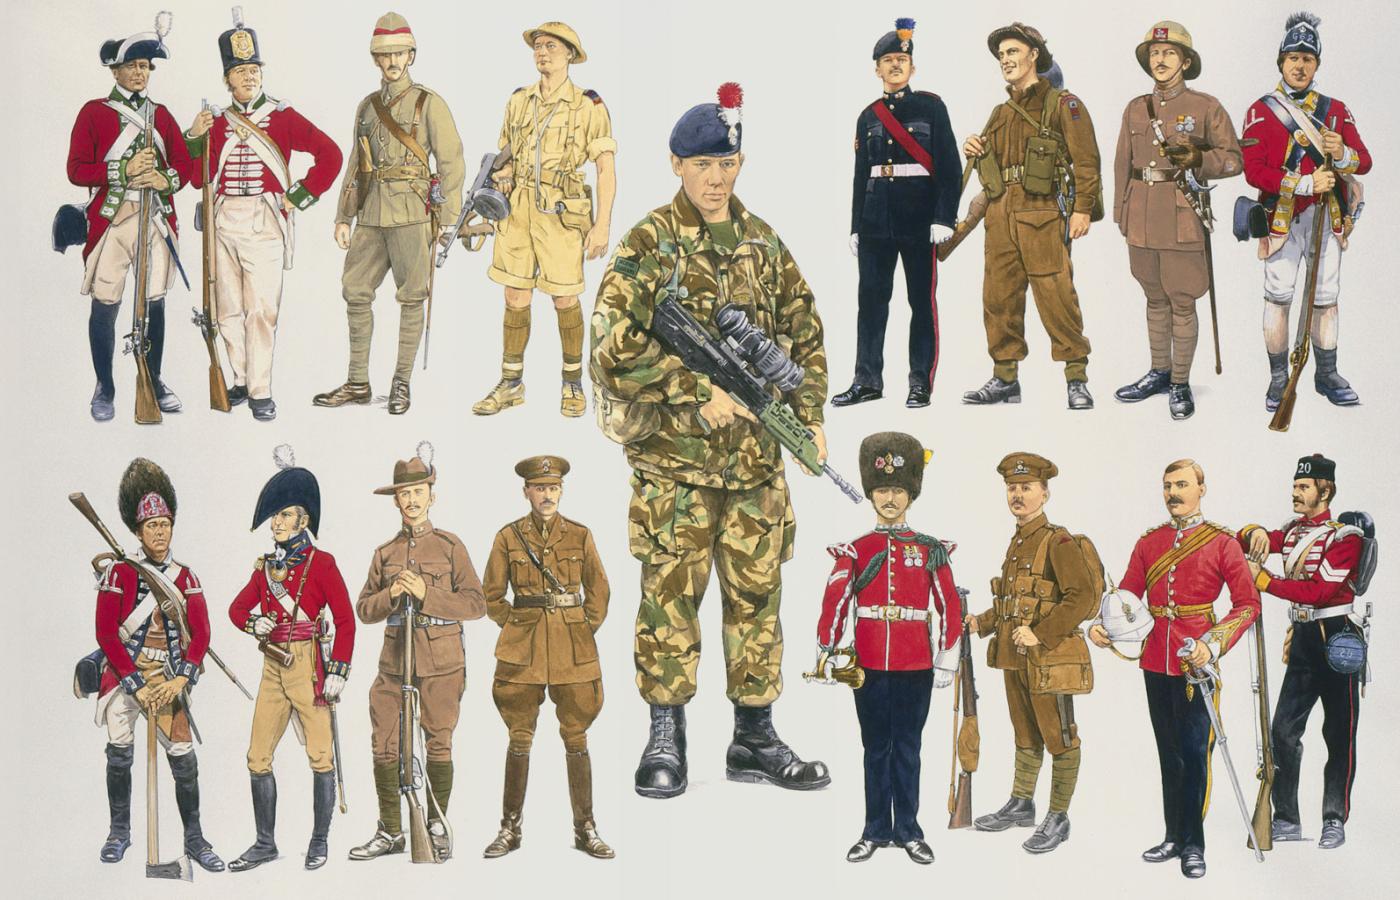 Mundury różnych formacji armii brytyjskiej od XVII w. do czasów współczesnych.